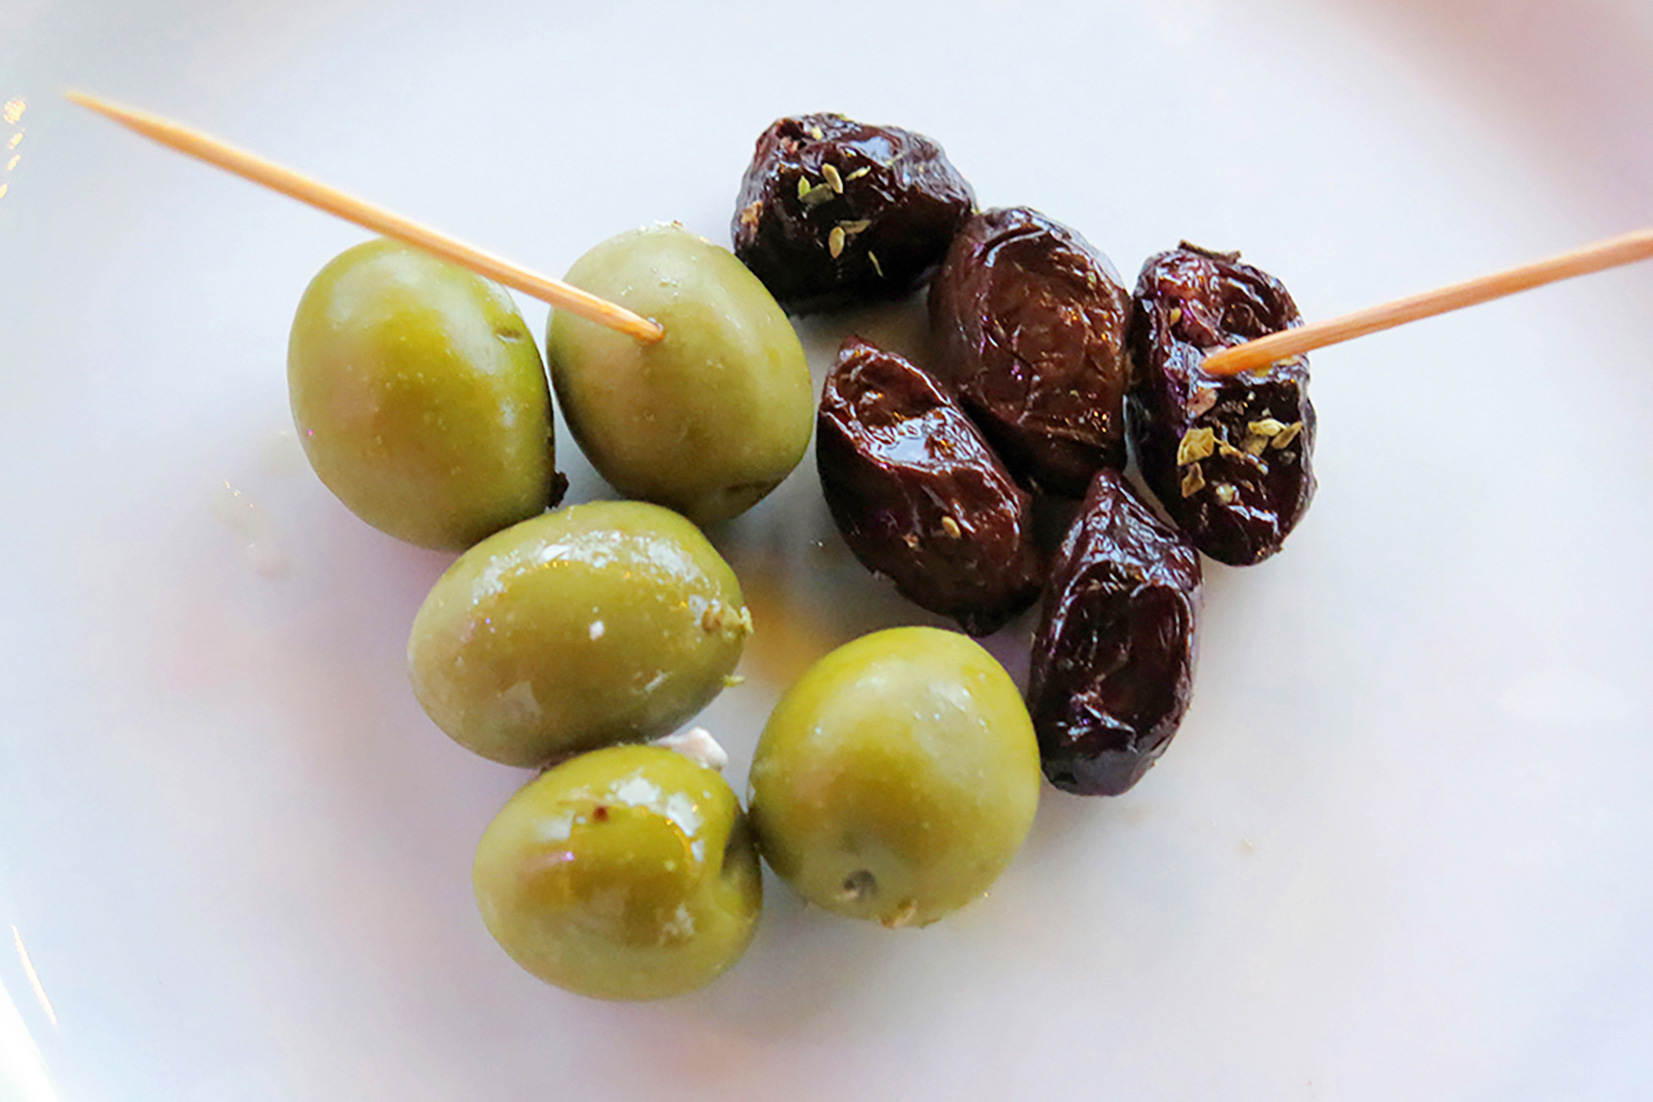 Konservētas olīvas ir no pelēcīgi zaļa līdz tumši brūnganam tonim. Vistumšākās ir gardēžu iecienītās olīvas, kas kaltētas un tad aplietas ar eļļu un garšaugiem.